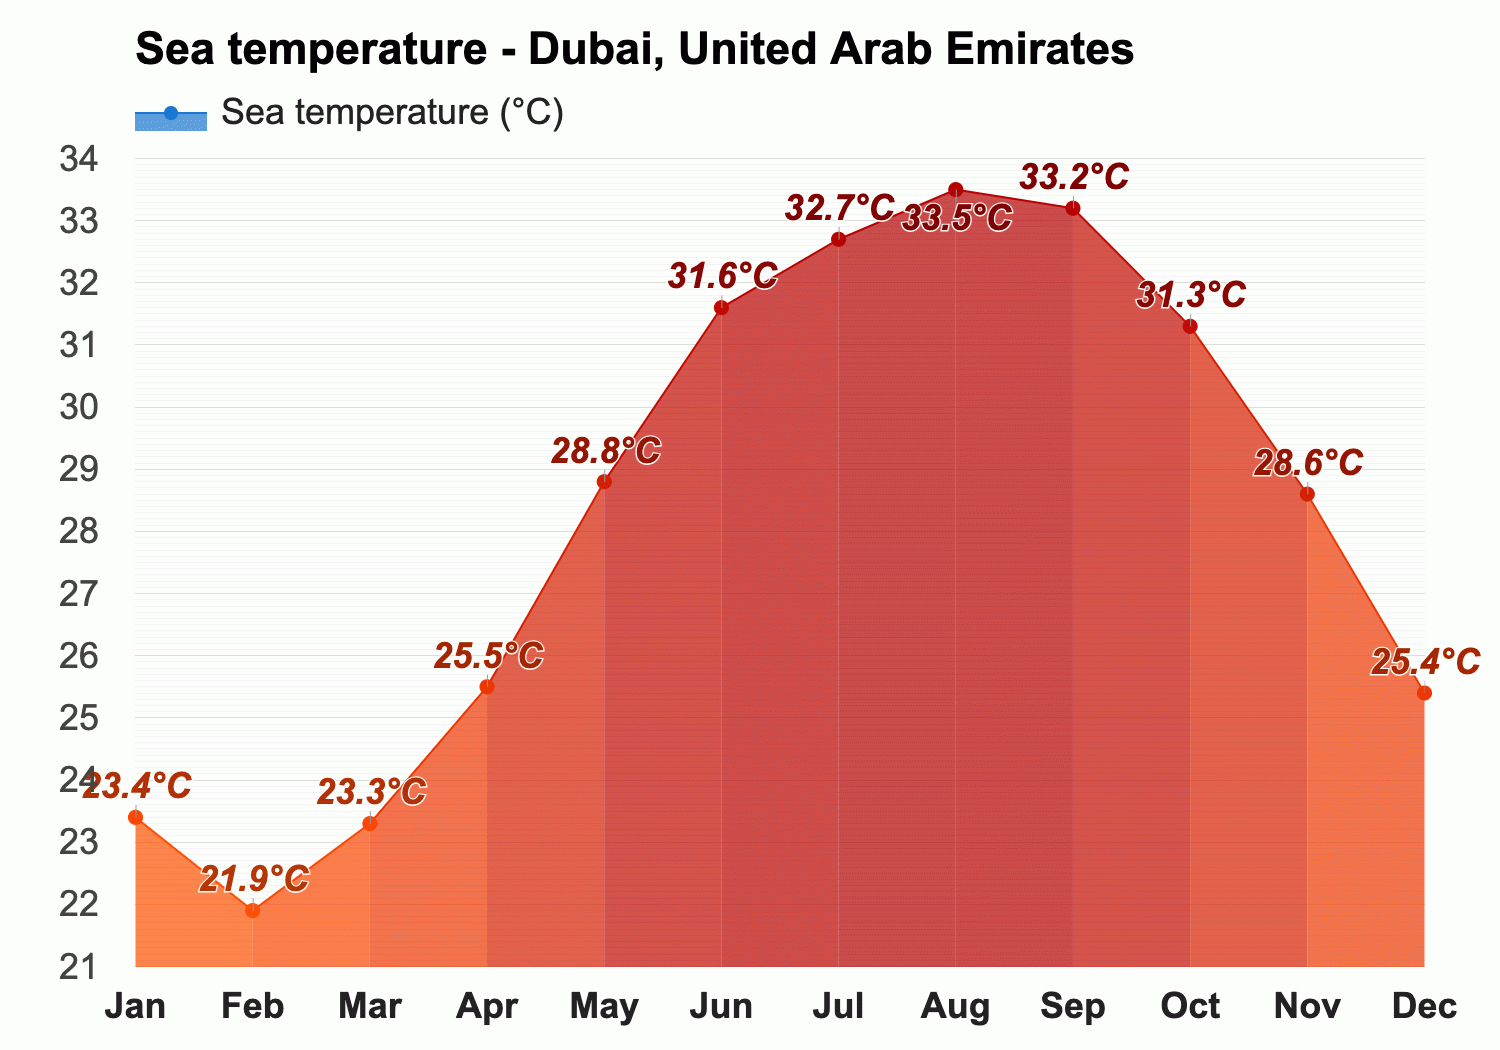 Dubai, United Arab Emirates - Climate & Monthly weather forecast